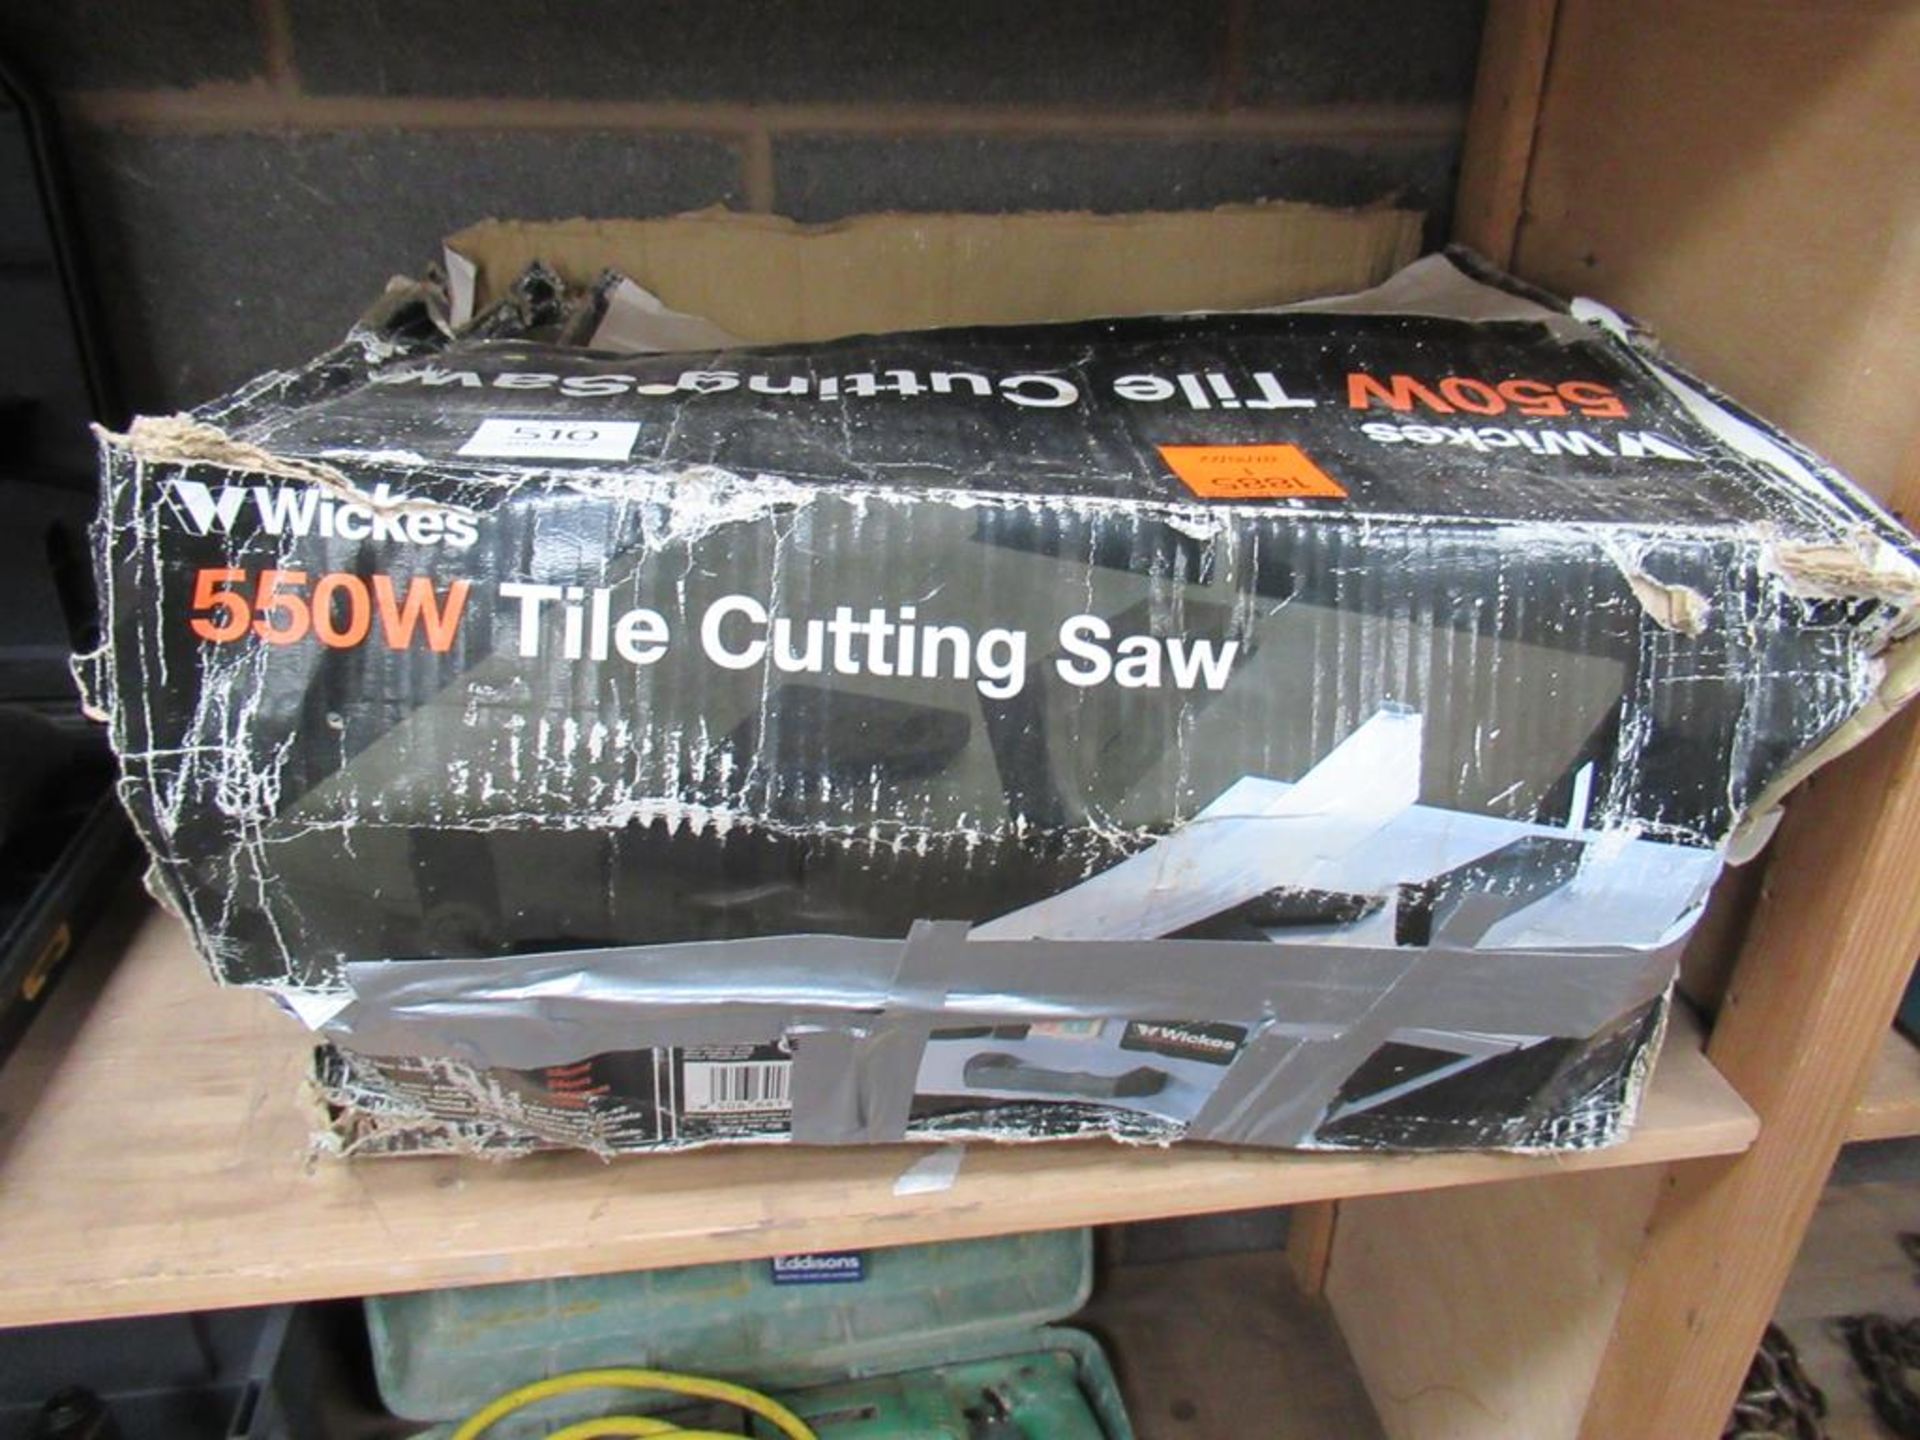 Wickes 550W Tile Cutting Saw